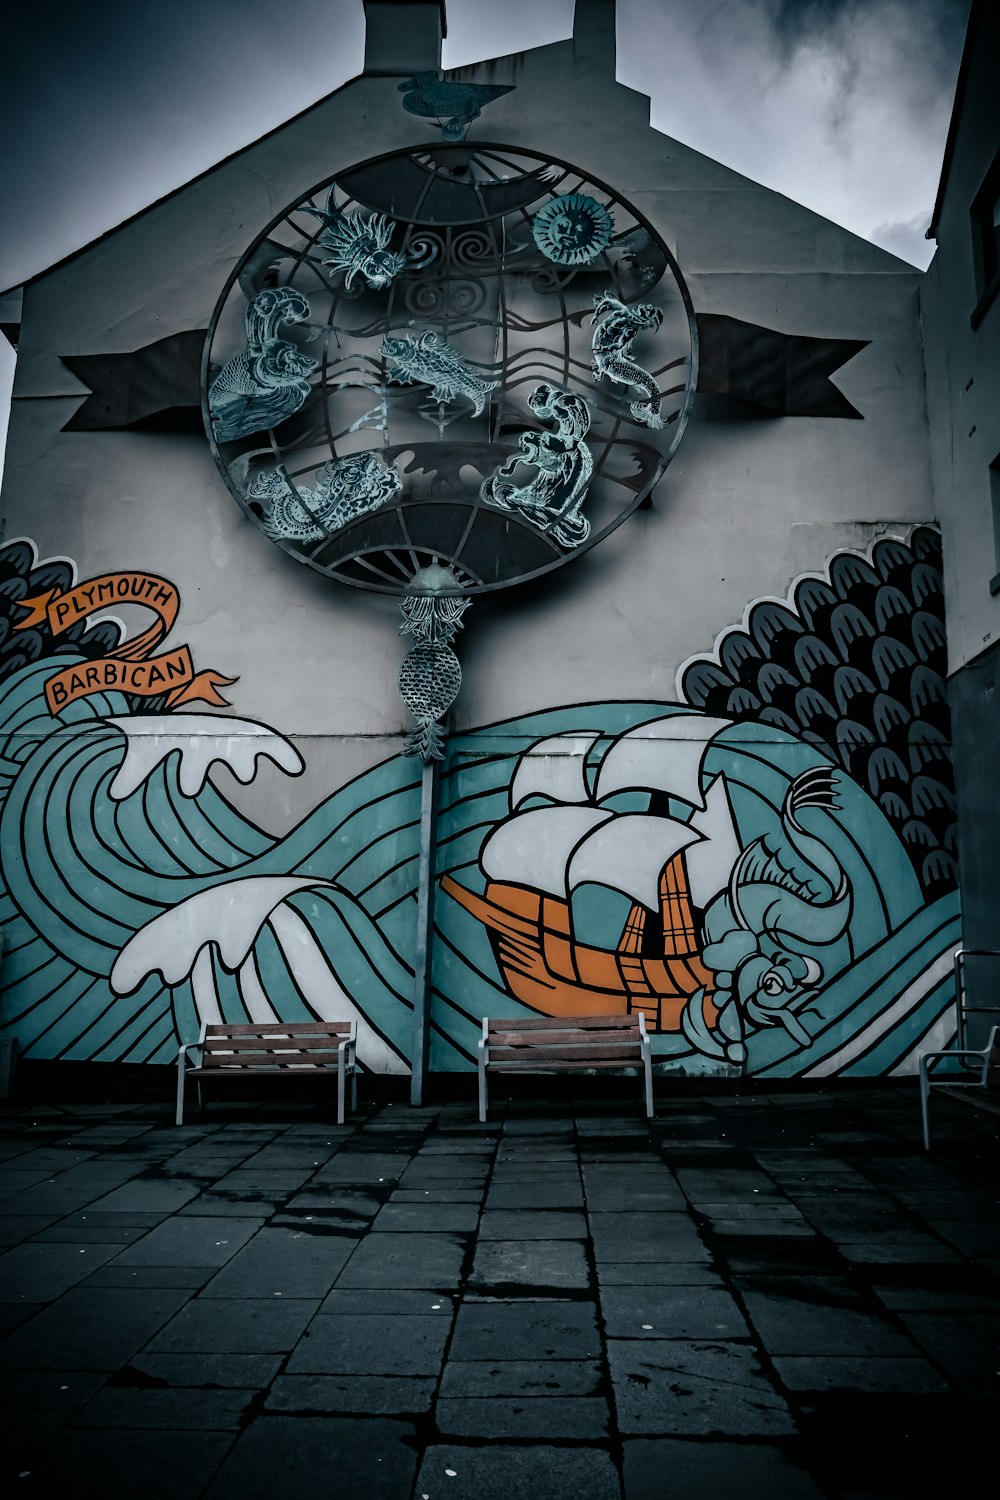 Un mur avec des graffitis